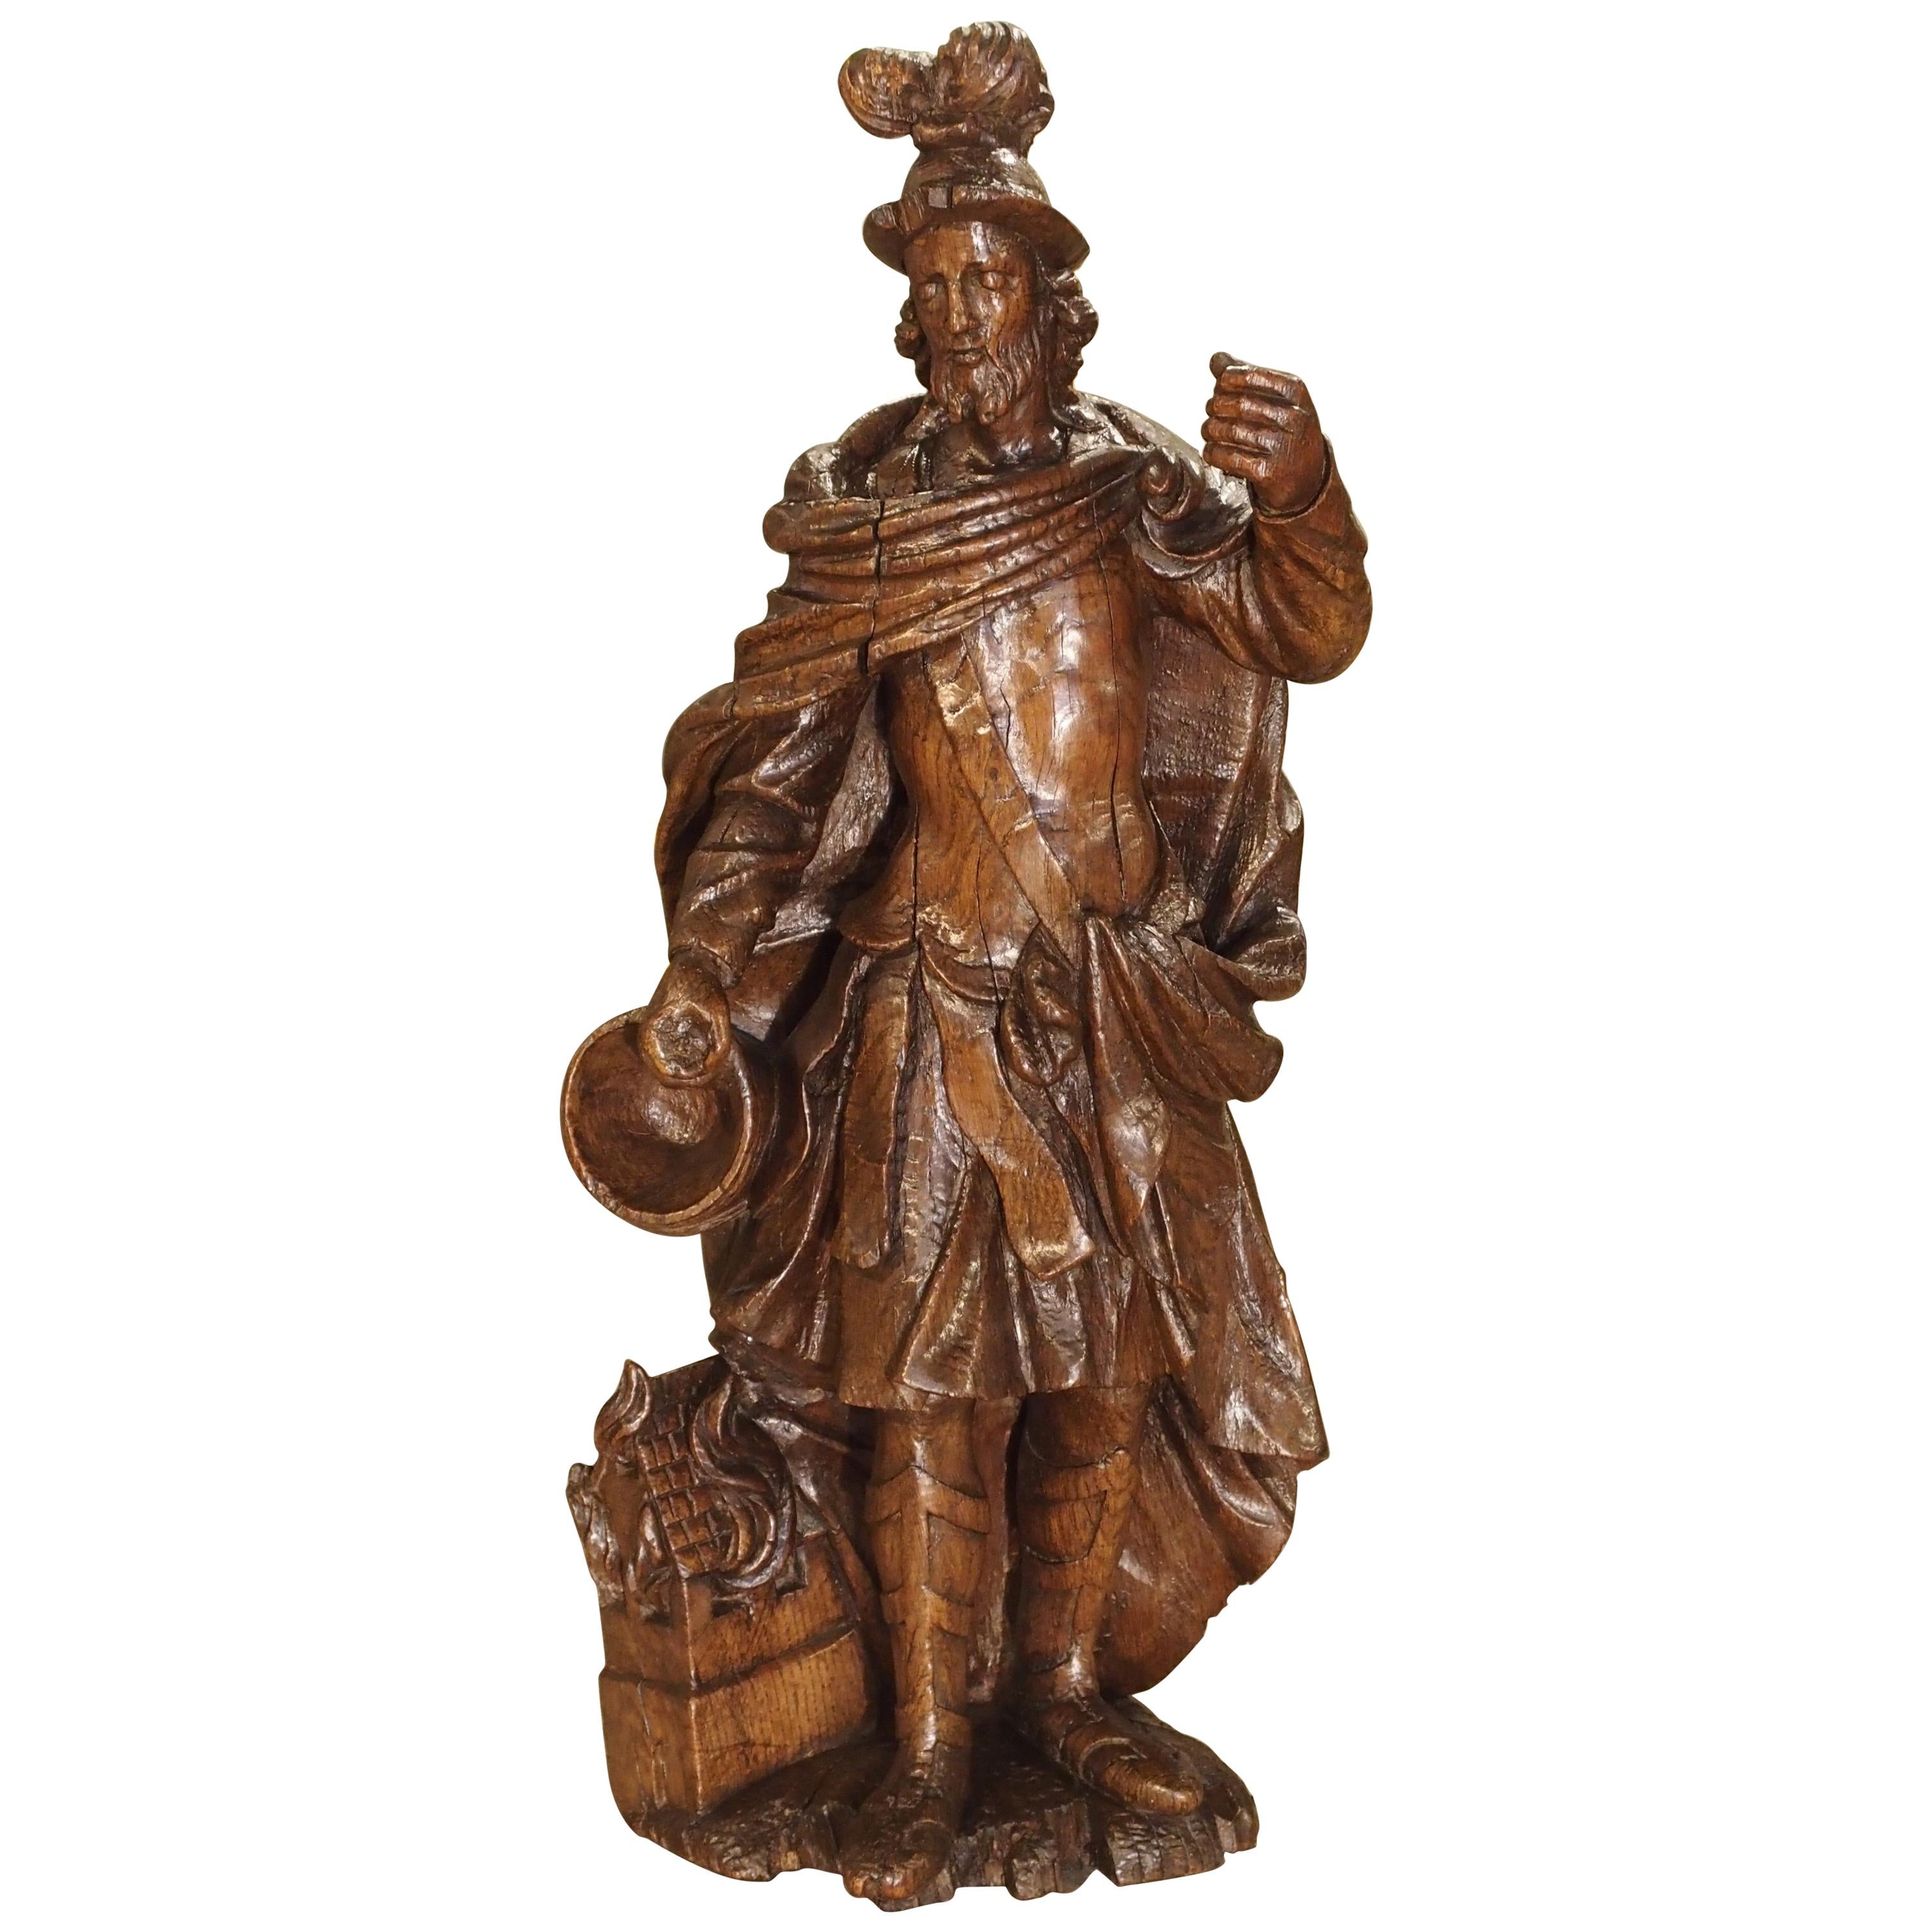 Wunderschöne Eichenholzstatue des Heiligen Florian, Schutzpatron der Feuerwehren, aus dem 17. Jahrhundert